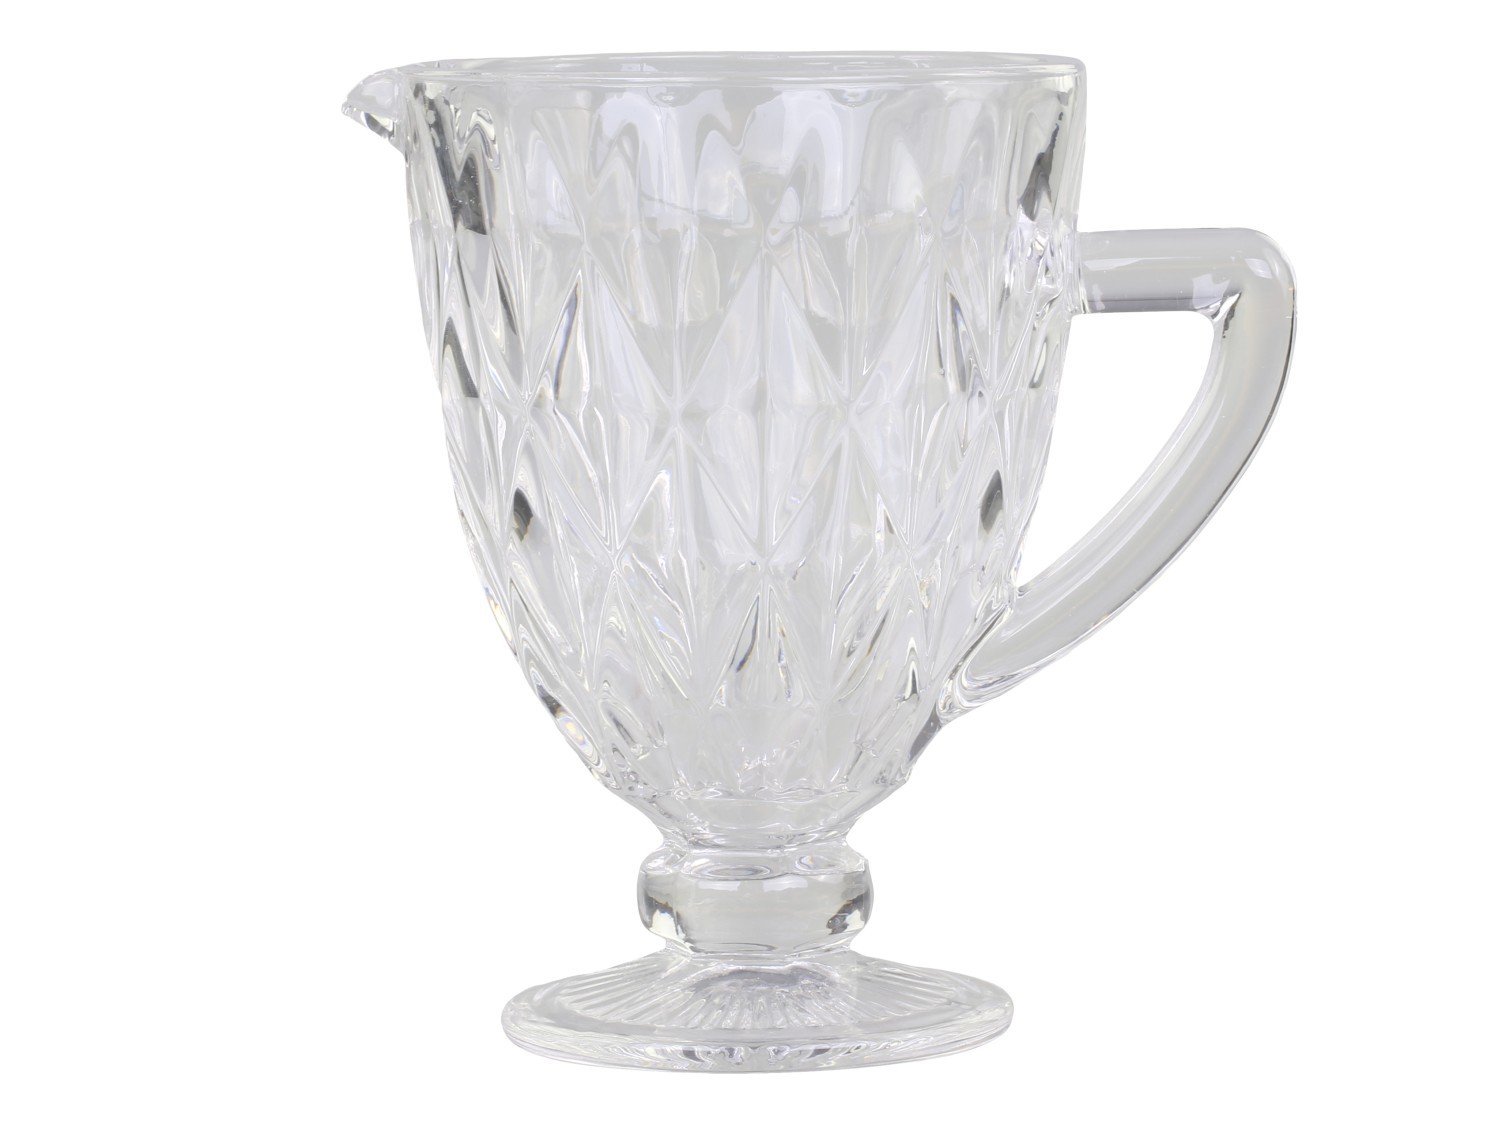 Džbán ze silnějšího skla s dekorem Diamond cut - 15*19,5cm  Chic Antique